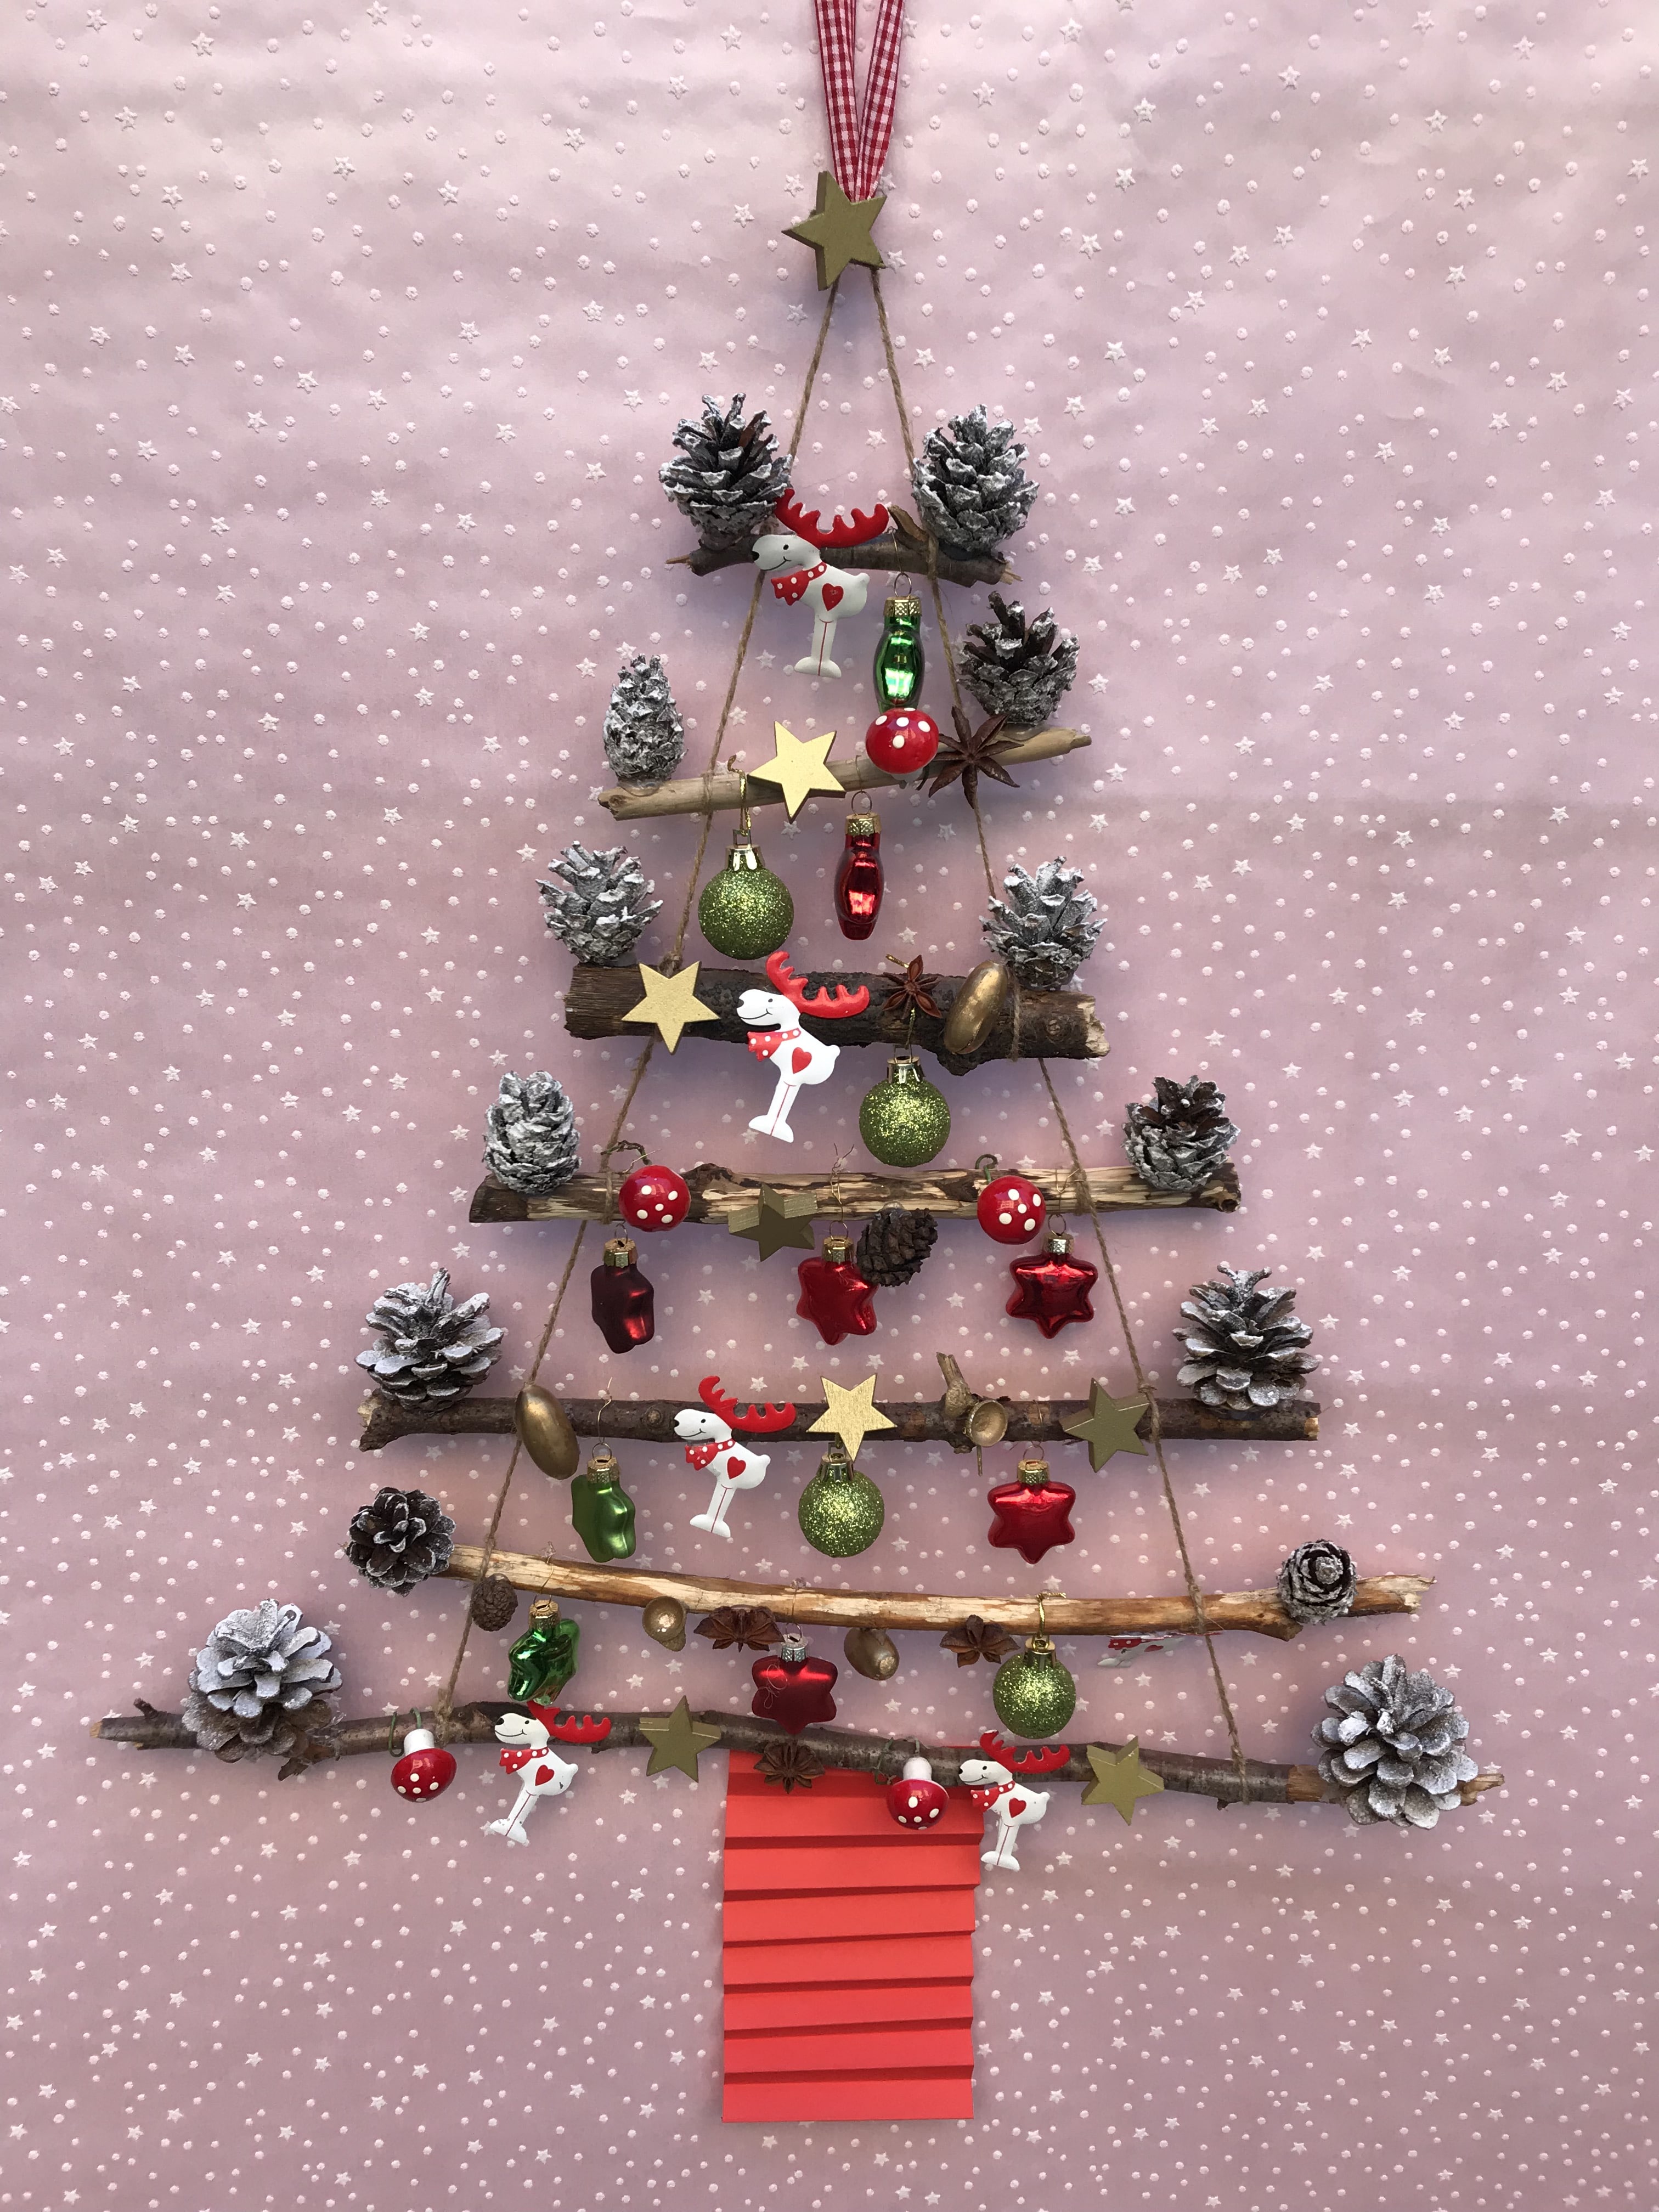 Weihnachtsbaum to go, Weihnachtsbasteln mit Kindern, Geschenkidee Weihnachten, Basteln mit Naturmaterialien